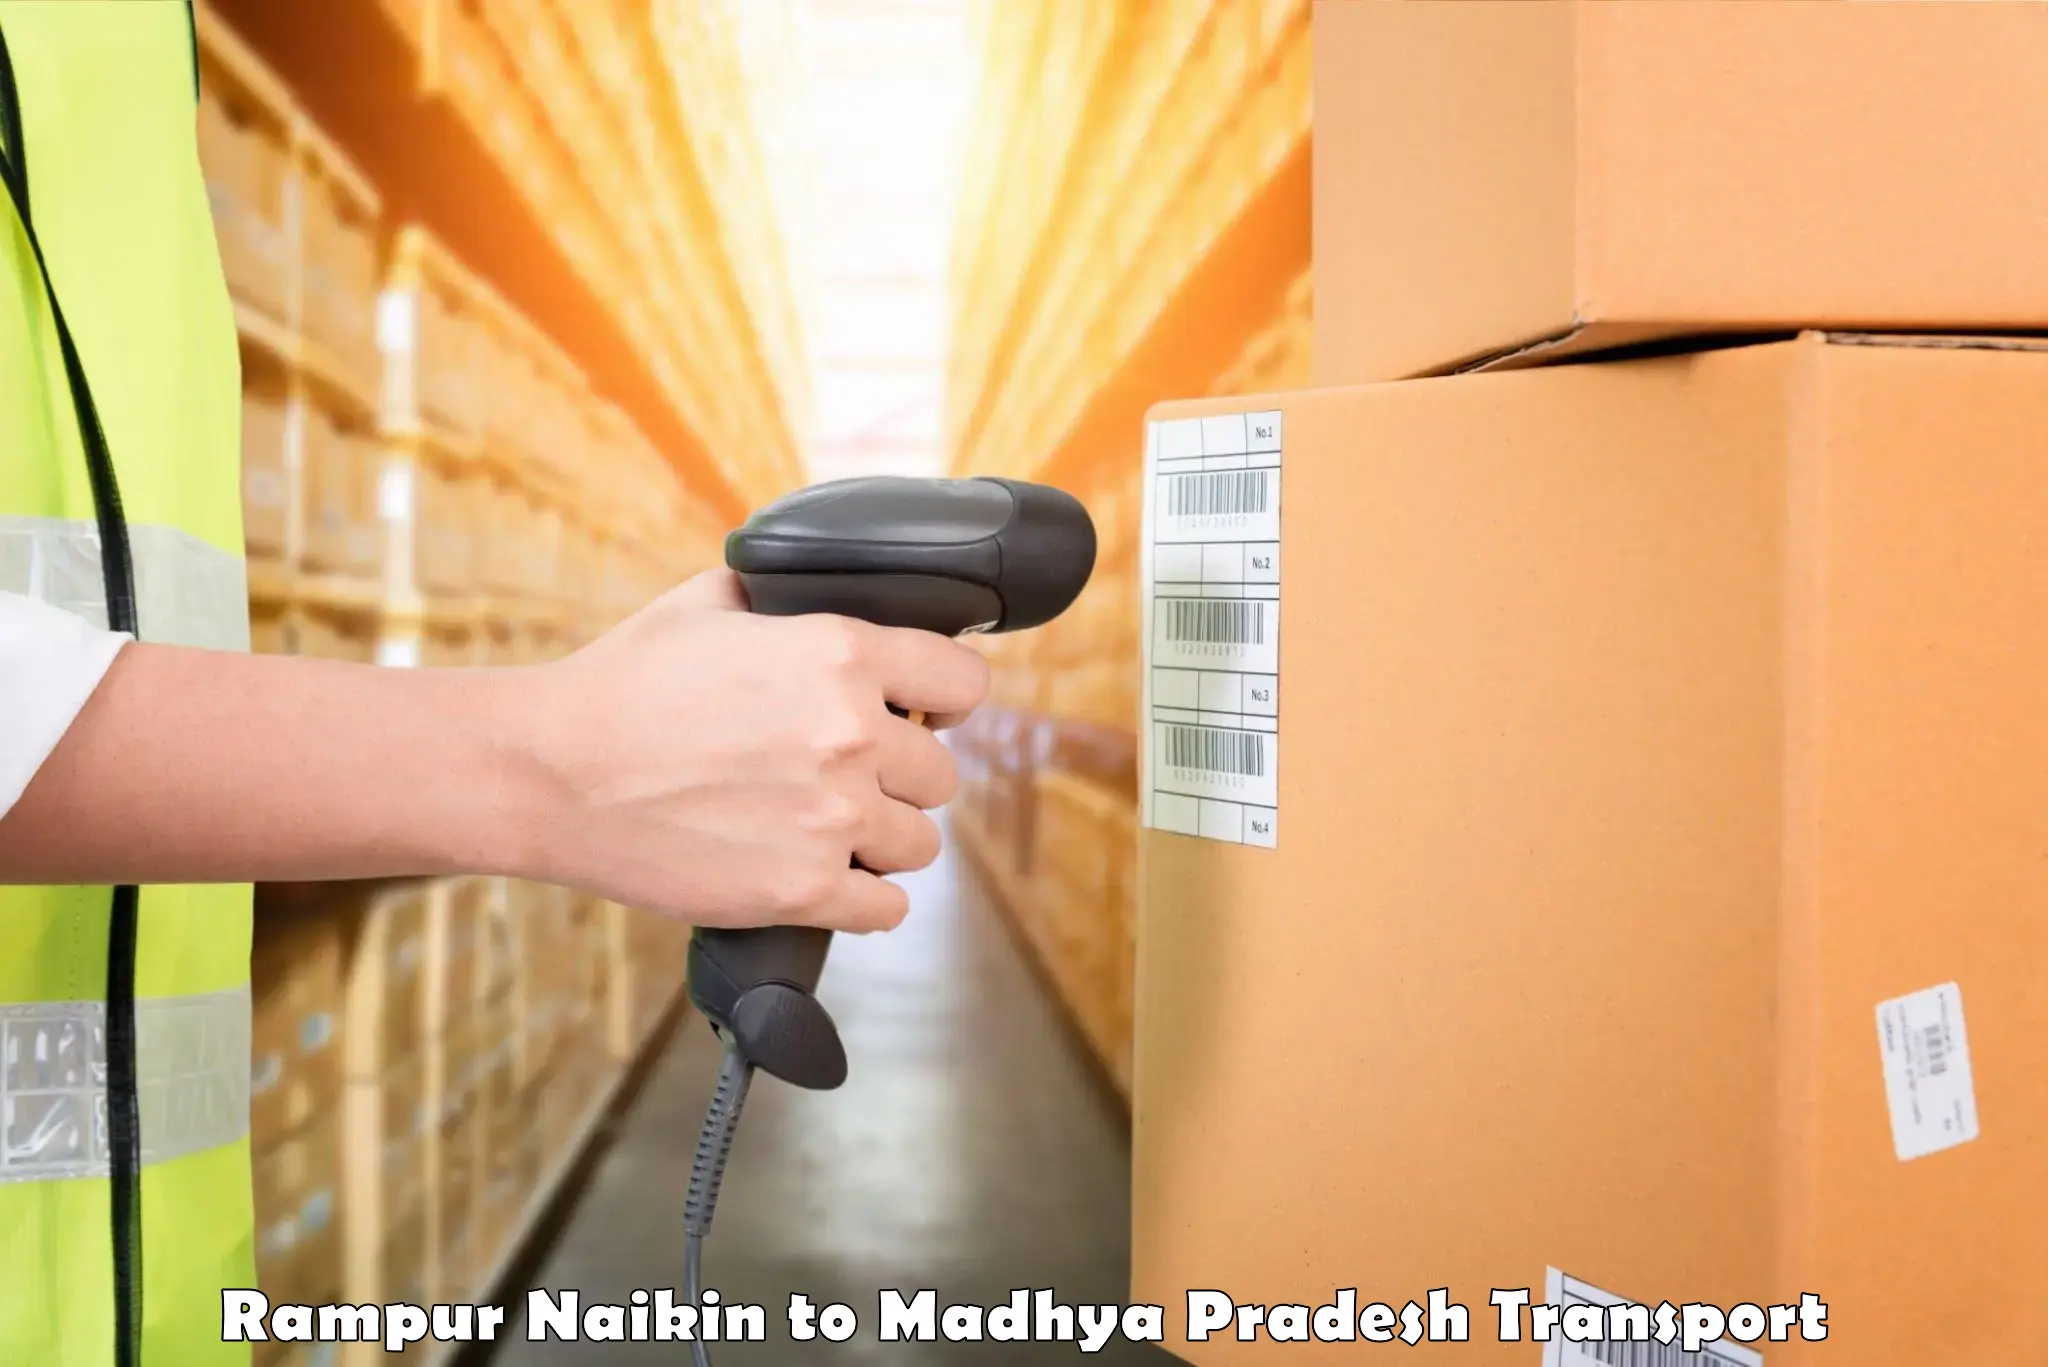 Furniture transport service Rampur Naikin to Maheshwar